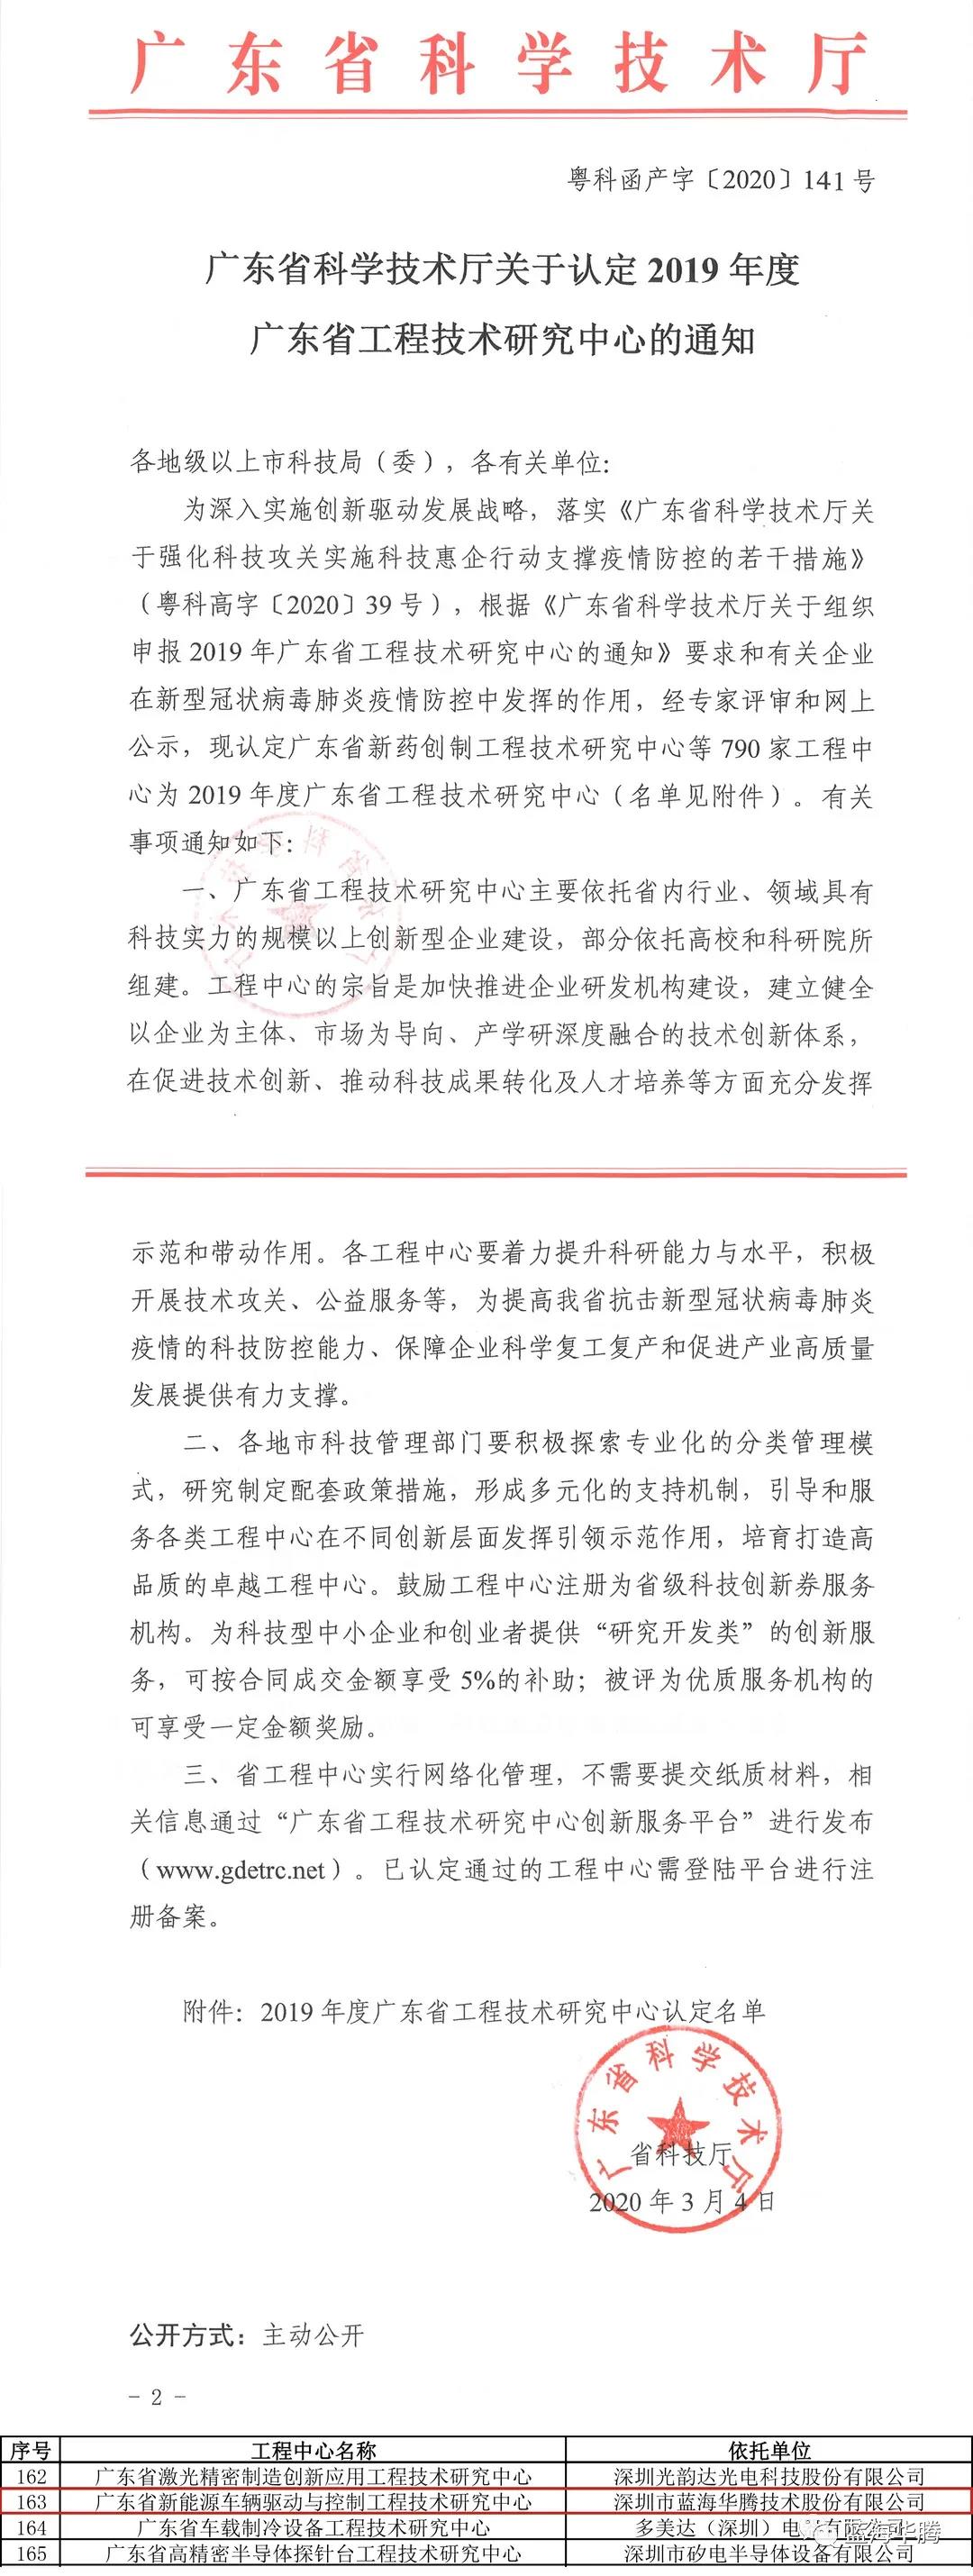 【喜讯】蓝海华腾被认定为广东省工程技术研究中心